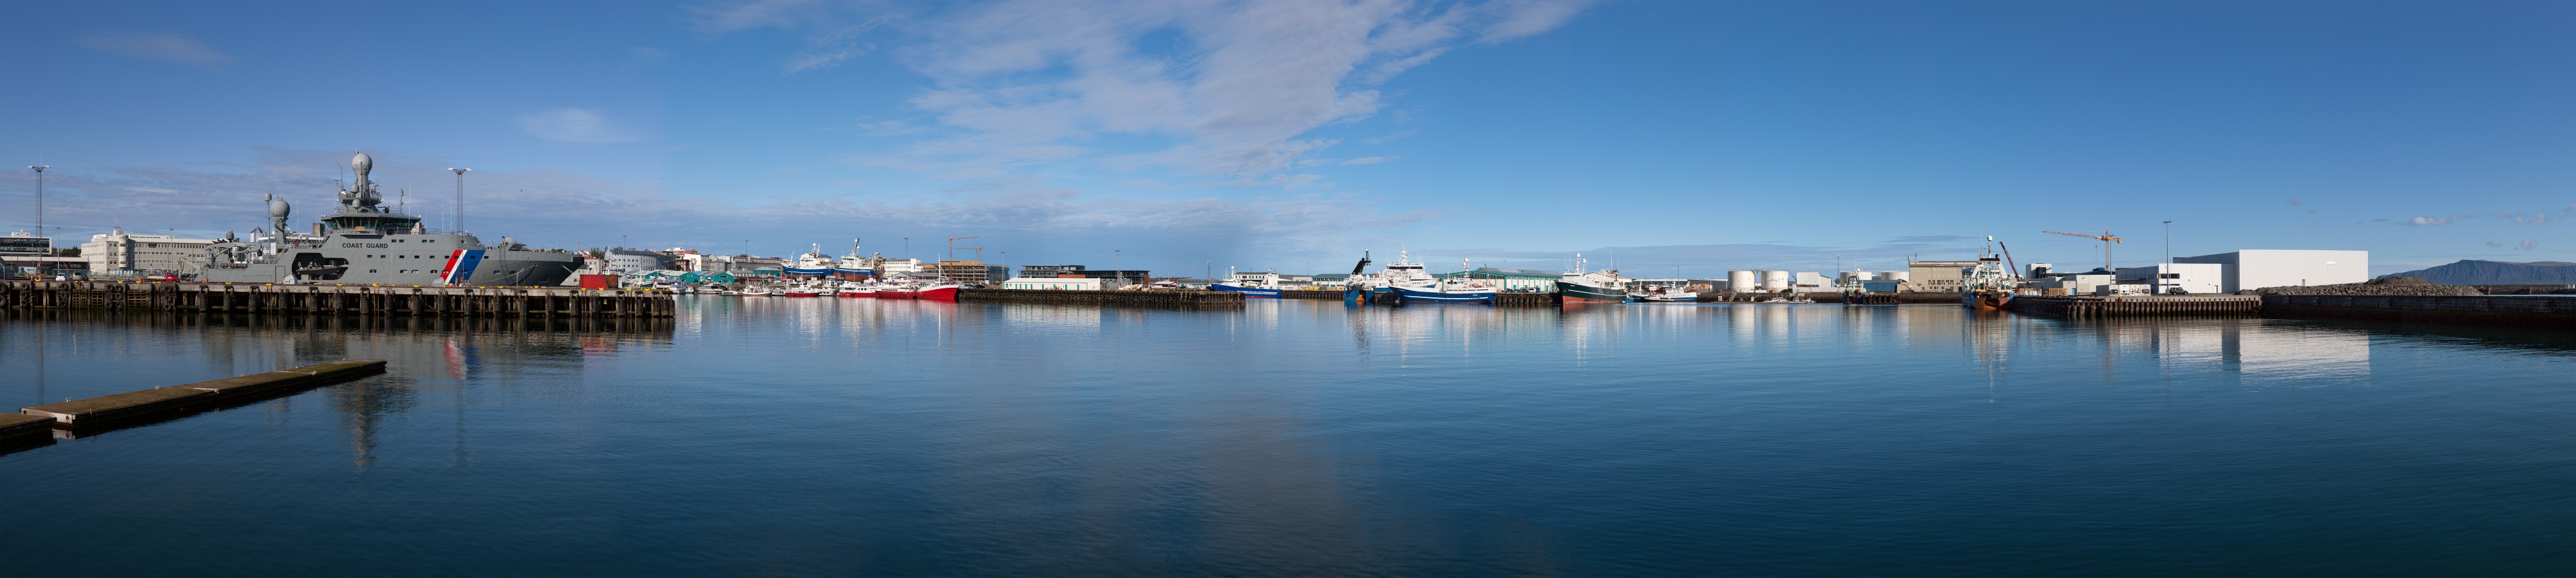 Reykjavík Old Harbor